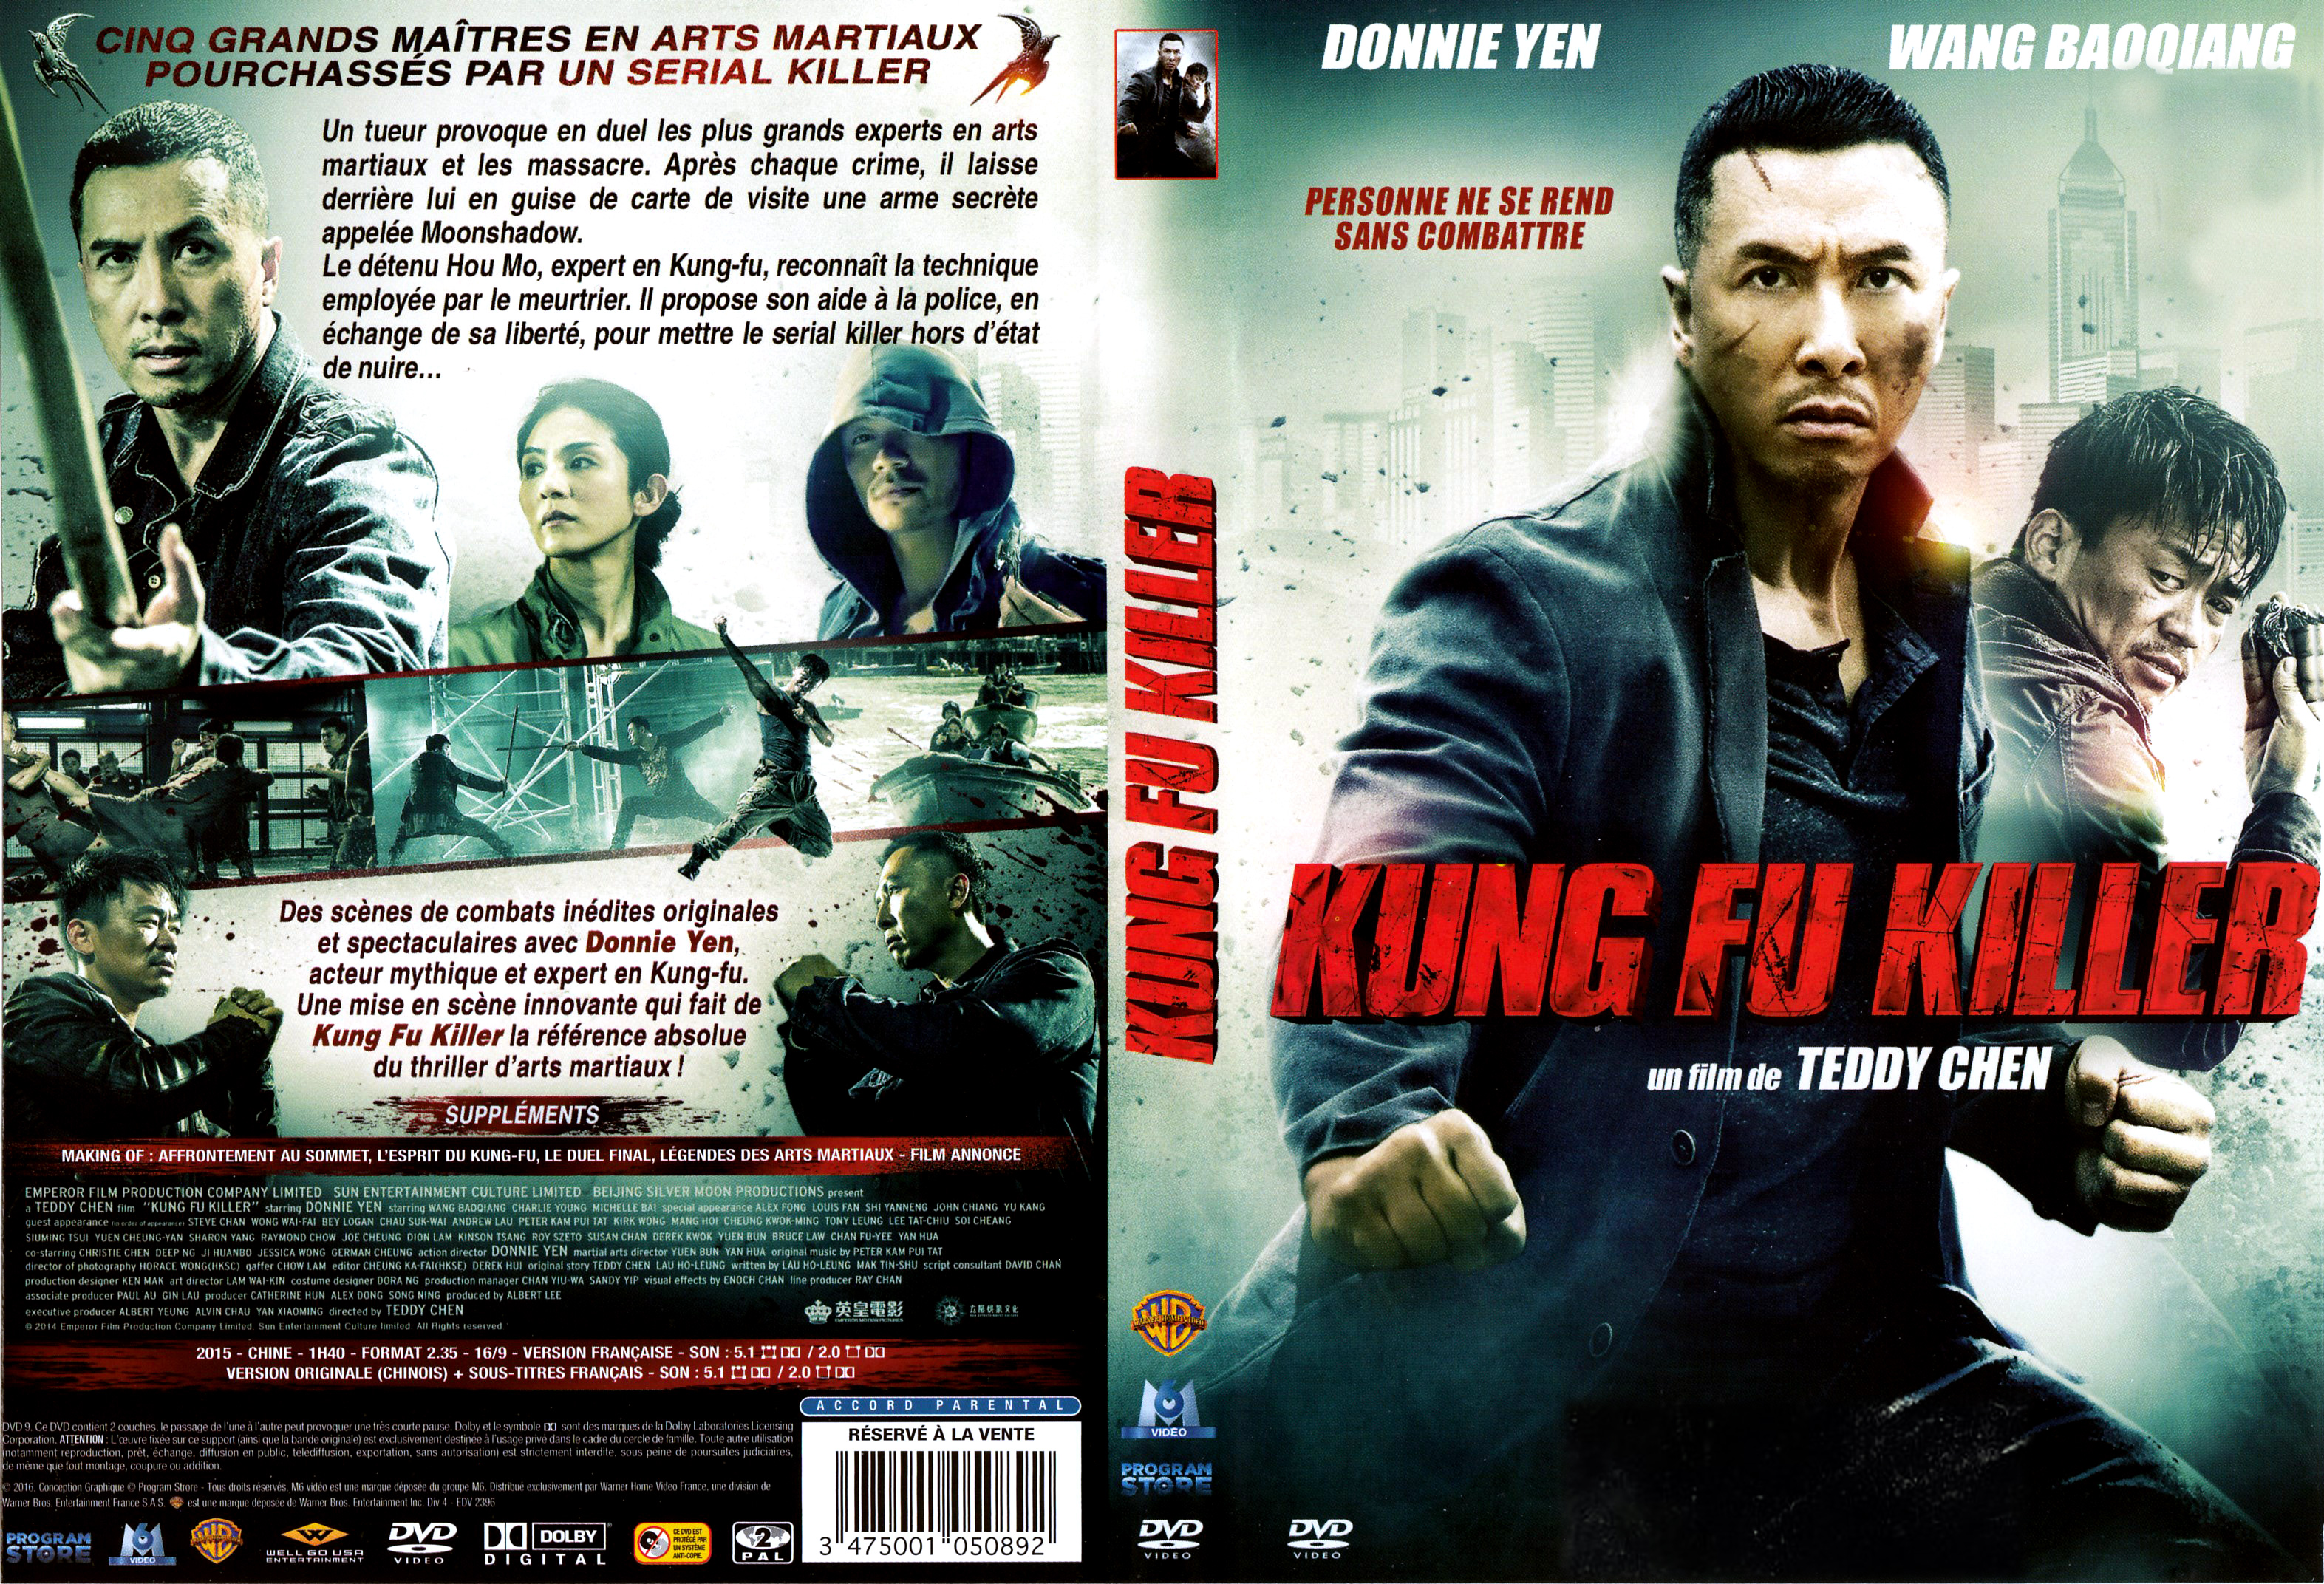 Jaquette DVD Kung fu killer